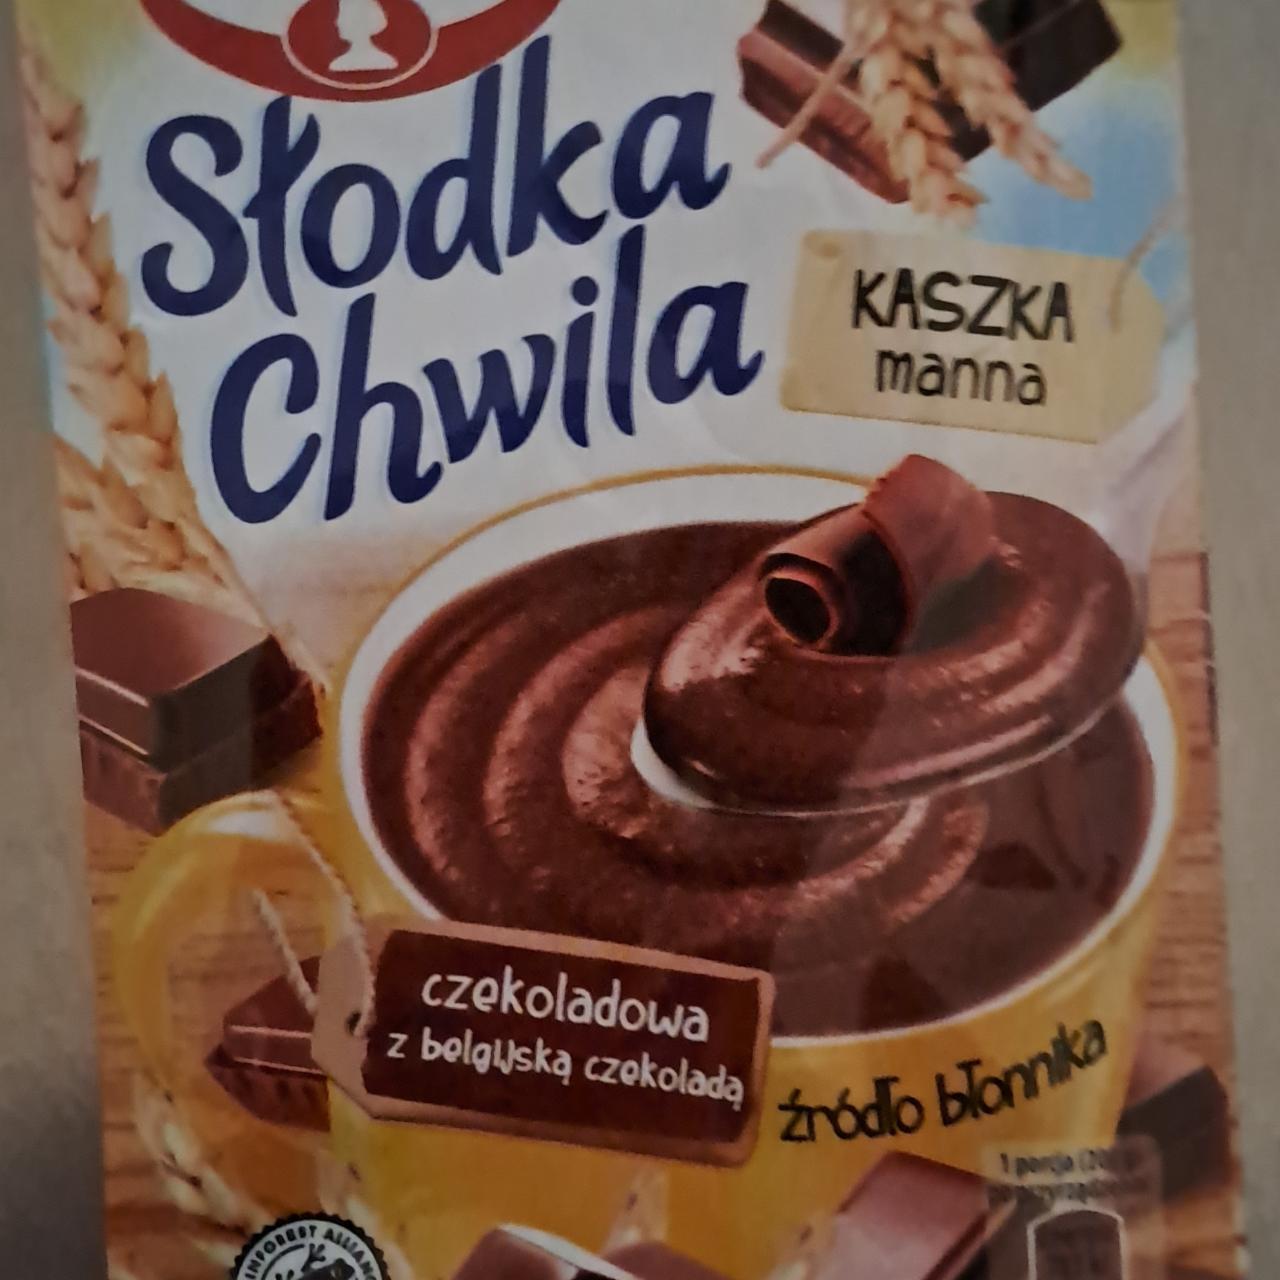 Fotografie - Slodka chwila kaszka manna czekoladowa z belgilska czekolada Dr.Oetker